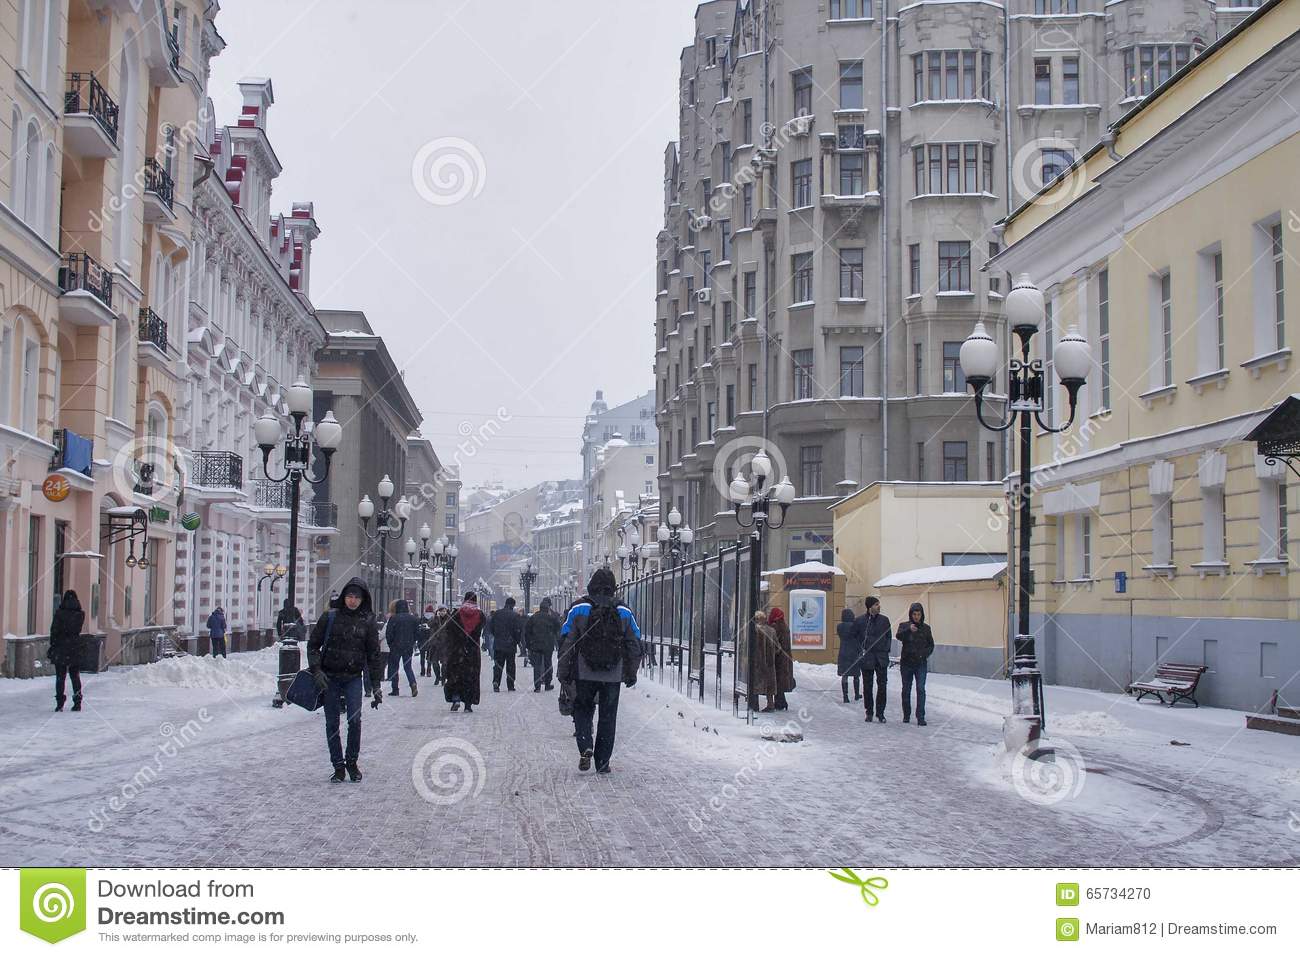 Справка о загрязнении воздуха и метеорологических условиях в г. Москве по состоянию на 13:00 22.12.2017 года - фото 1